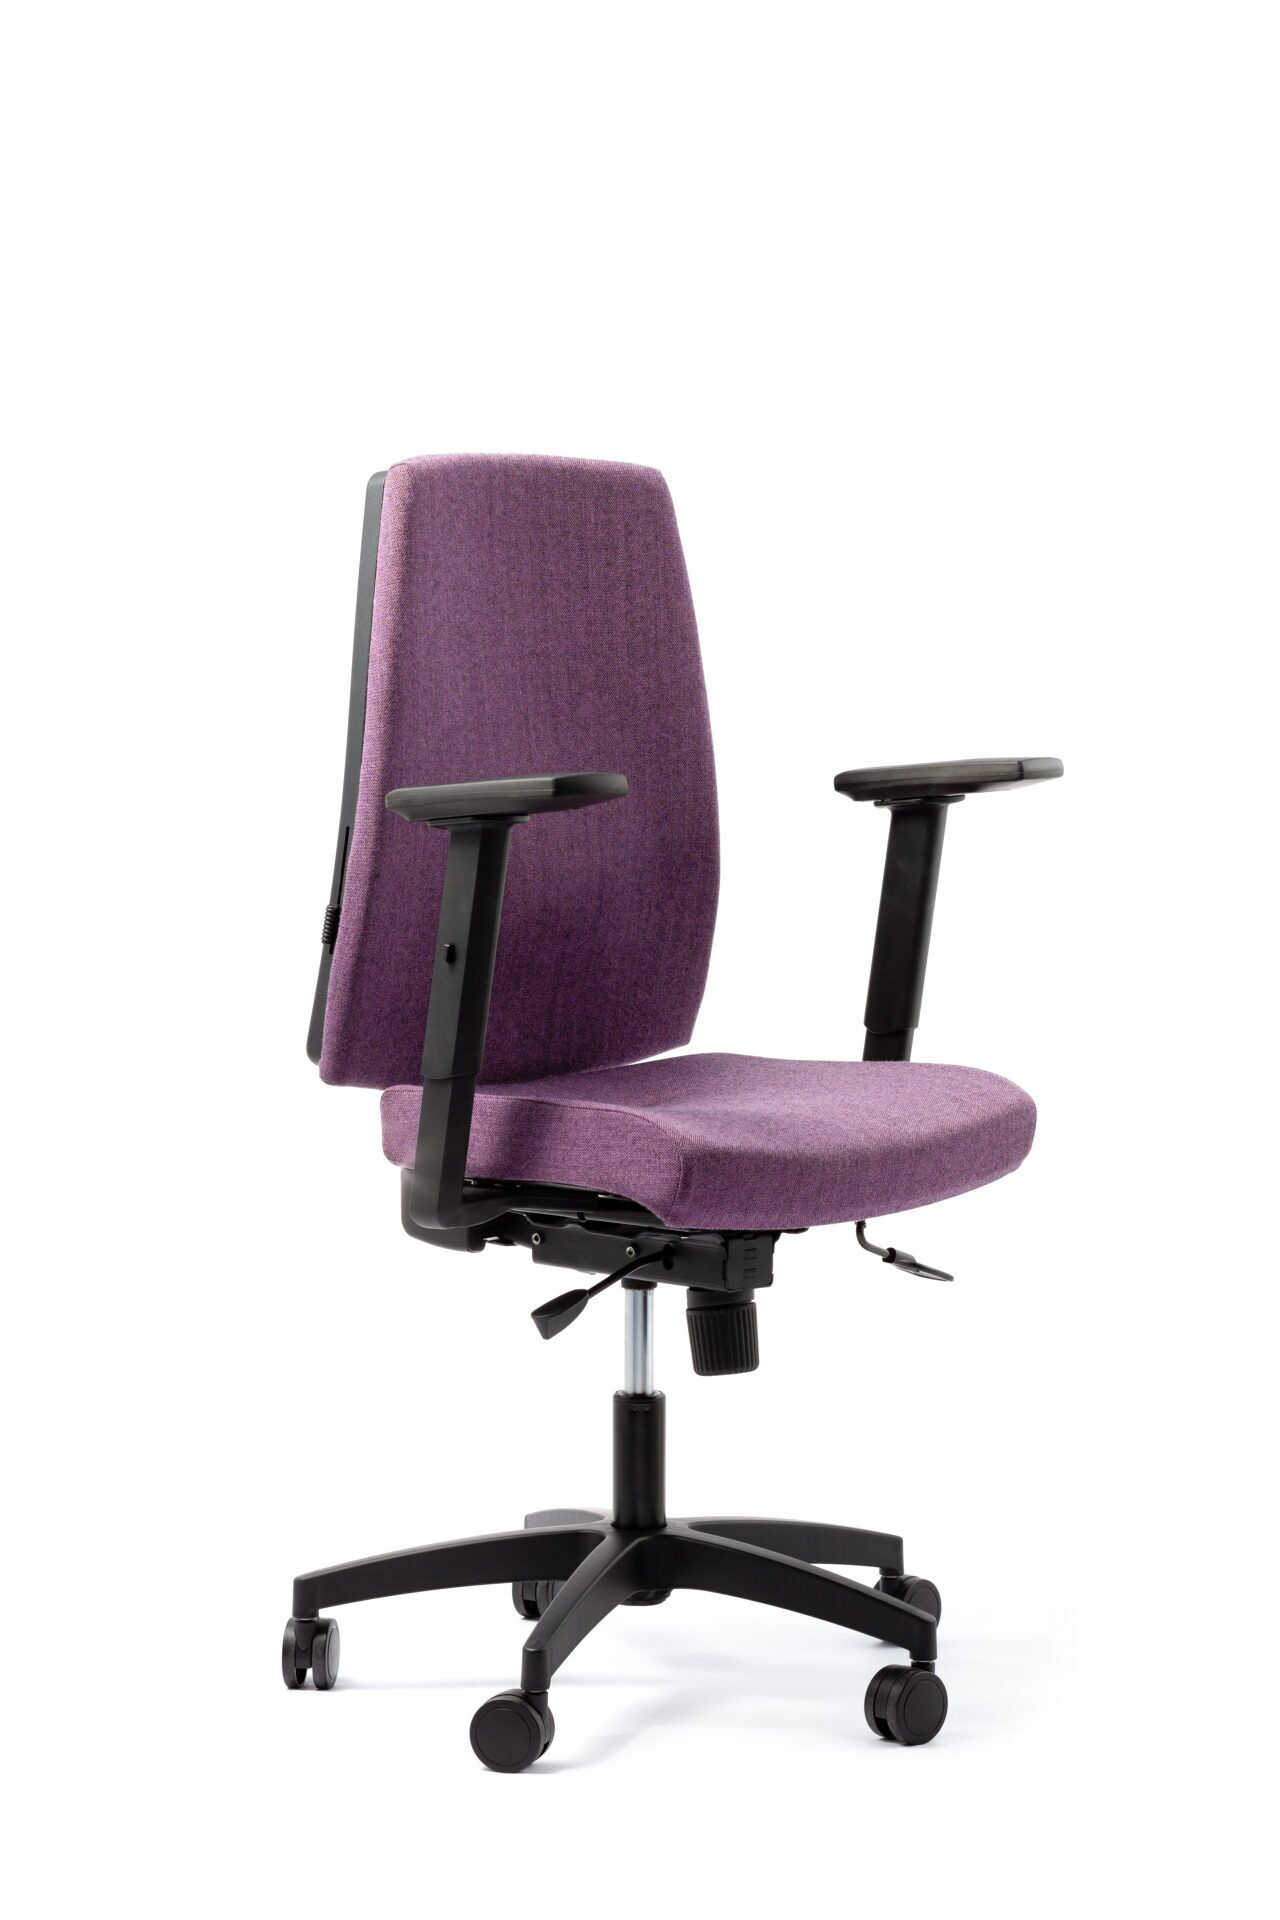 Fioletowy fotel biurowy - widoczny po skosie z przodu zdjęcie 6